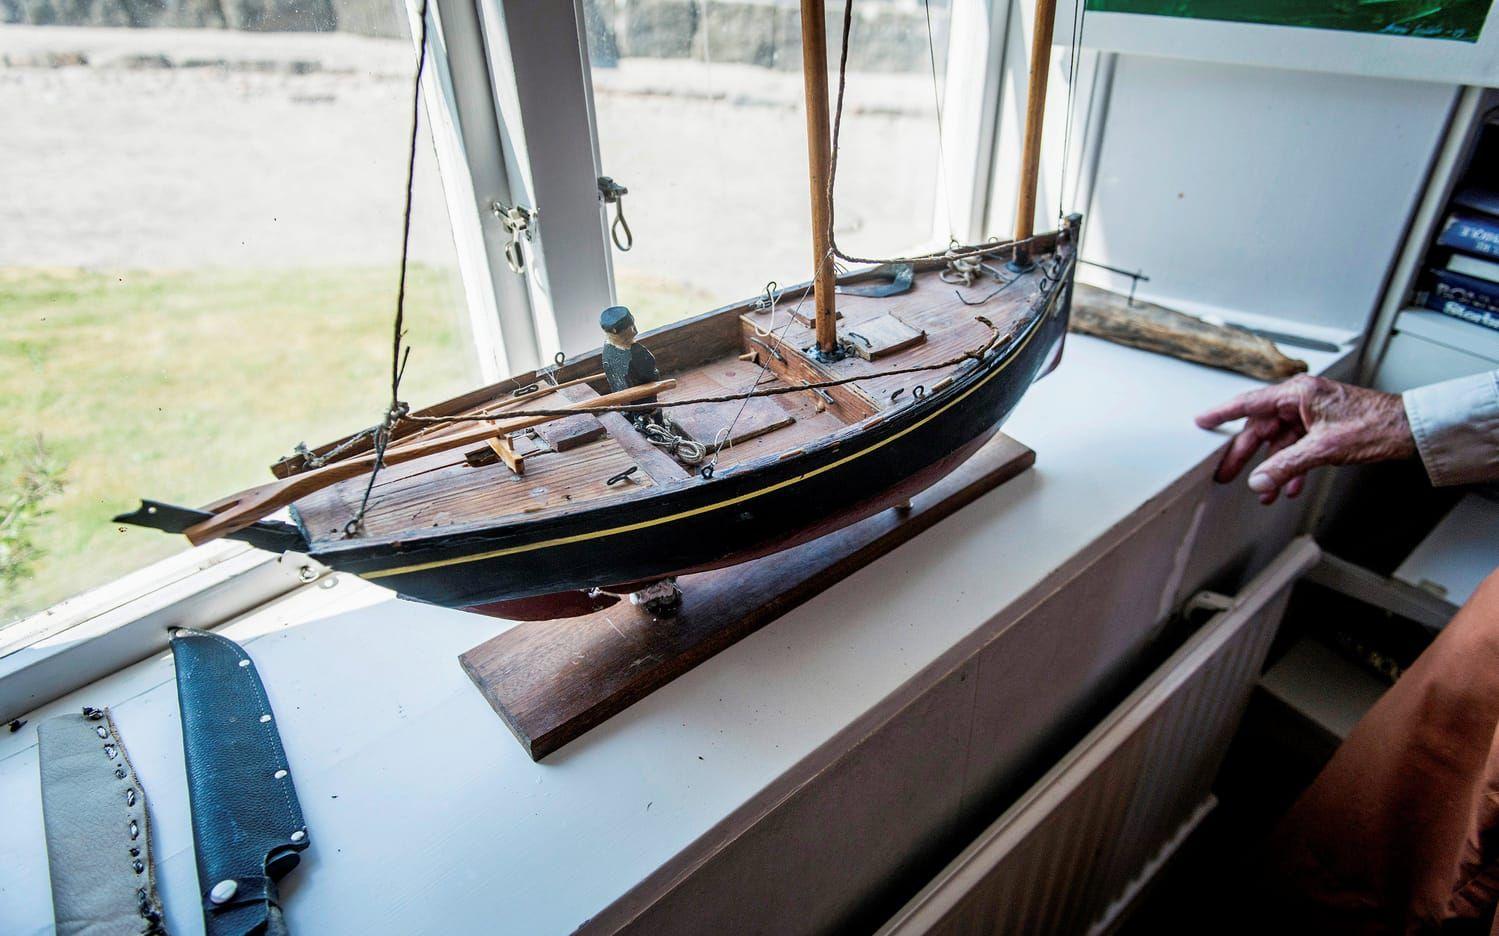 Bernt Salléns modell av den franska sardinbåten. Att bygga en fullstor replika tog fem år. 